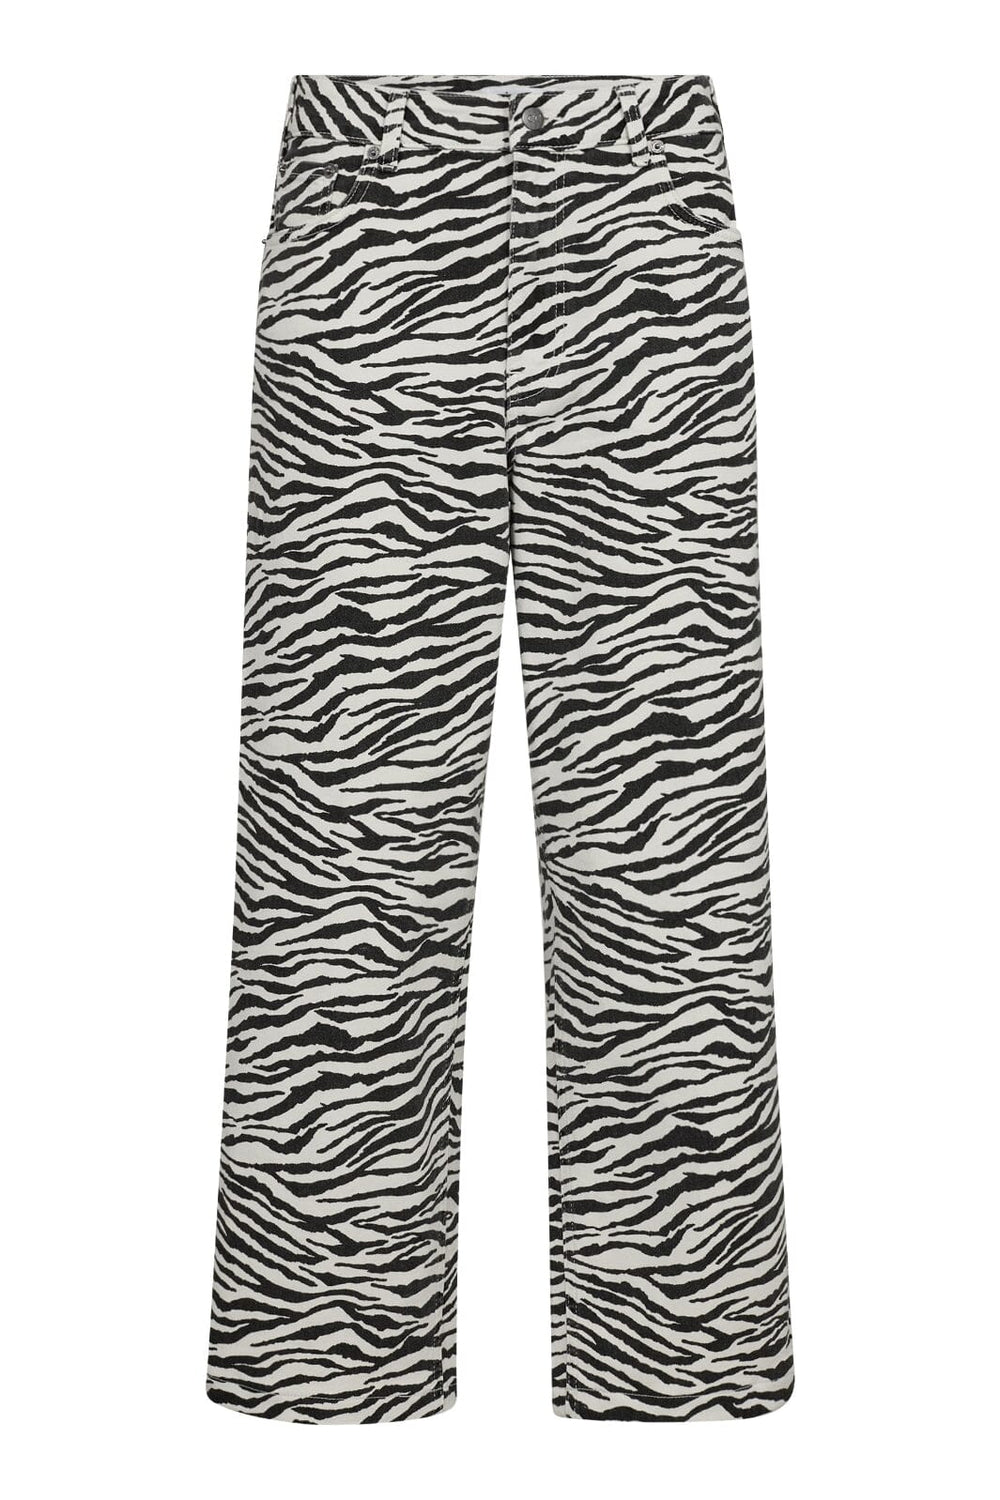 Forudbestilling - Co´couture - Zioncc Zebra Crop Pant 31410 - 1196 Offwhite-Black Bukser 